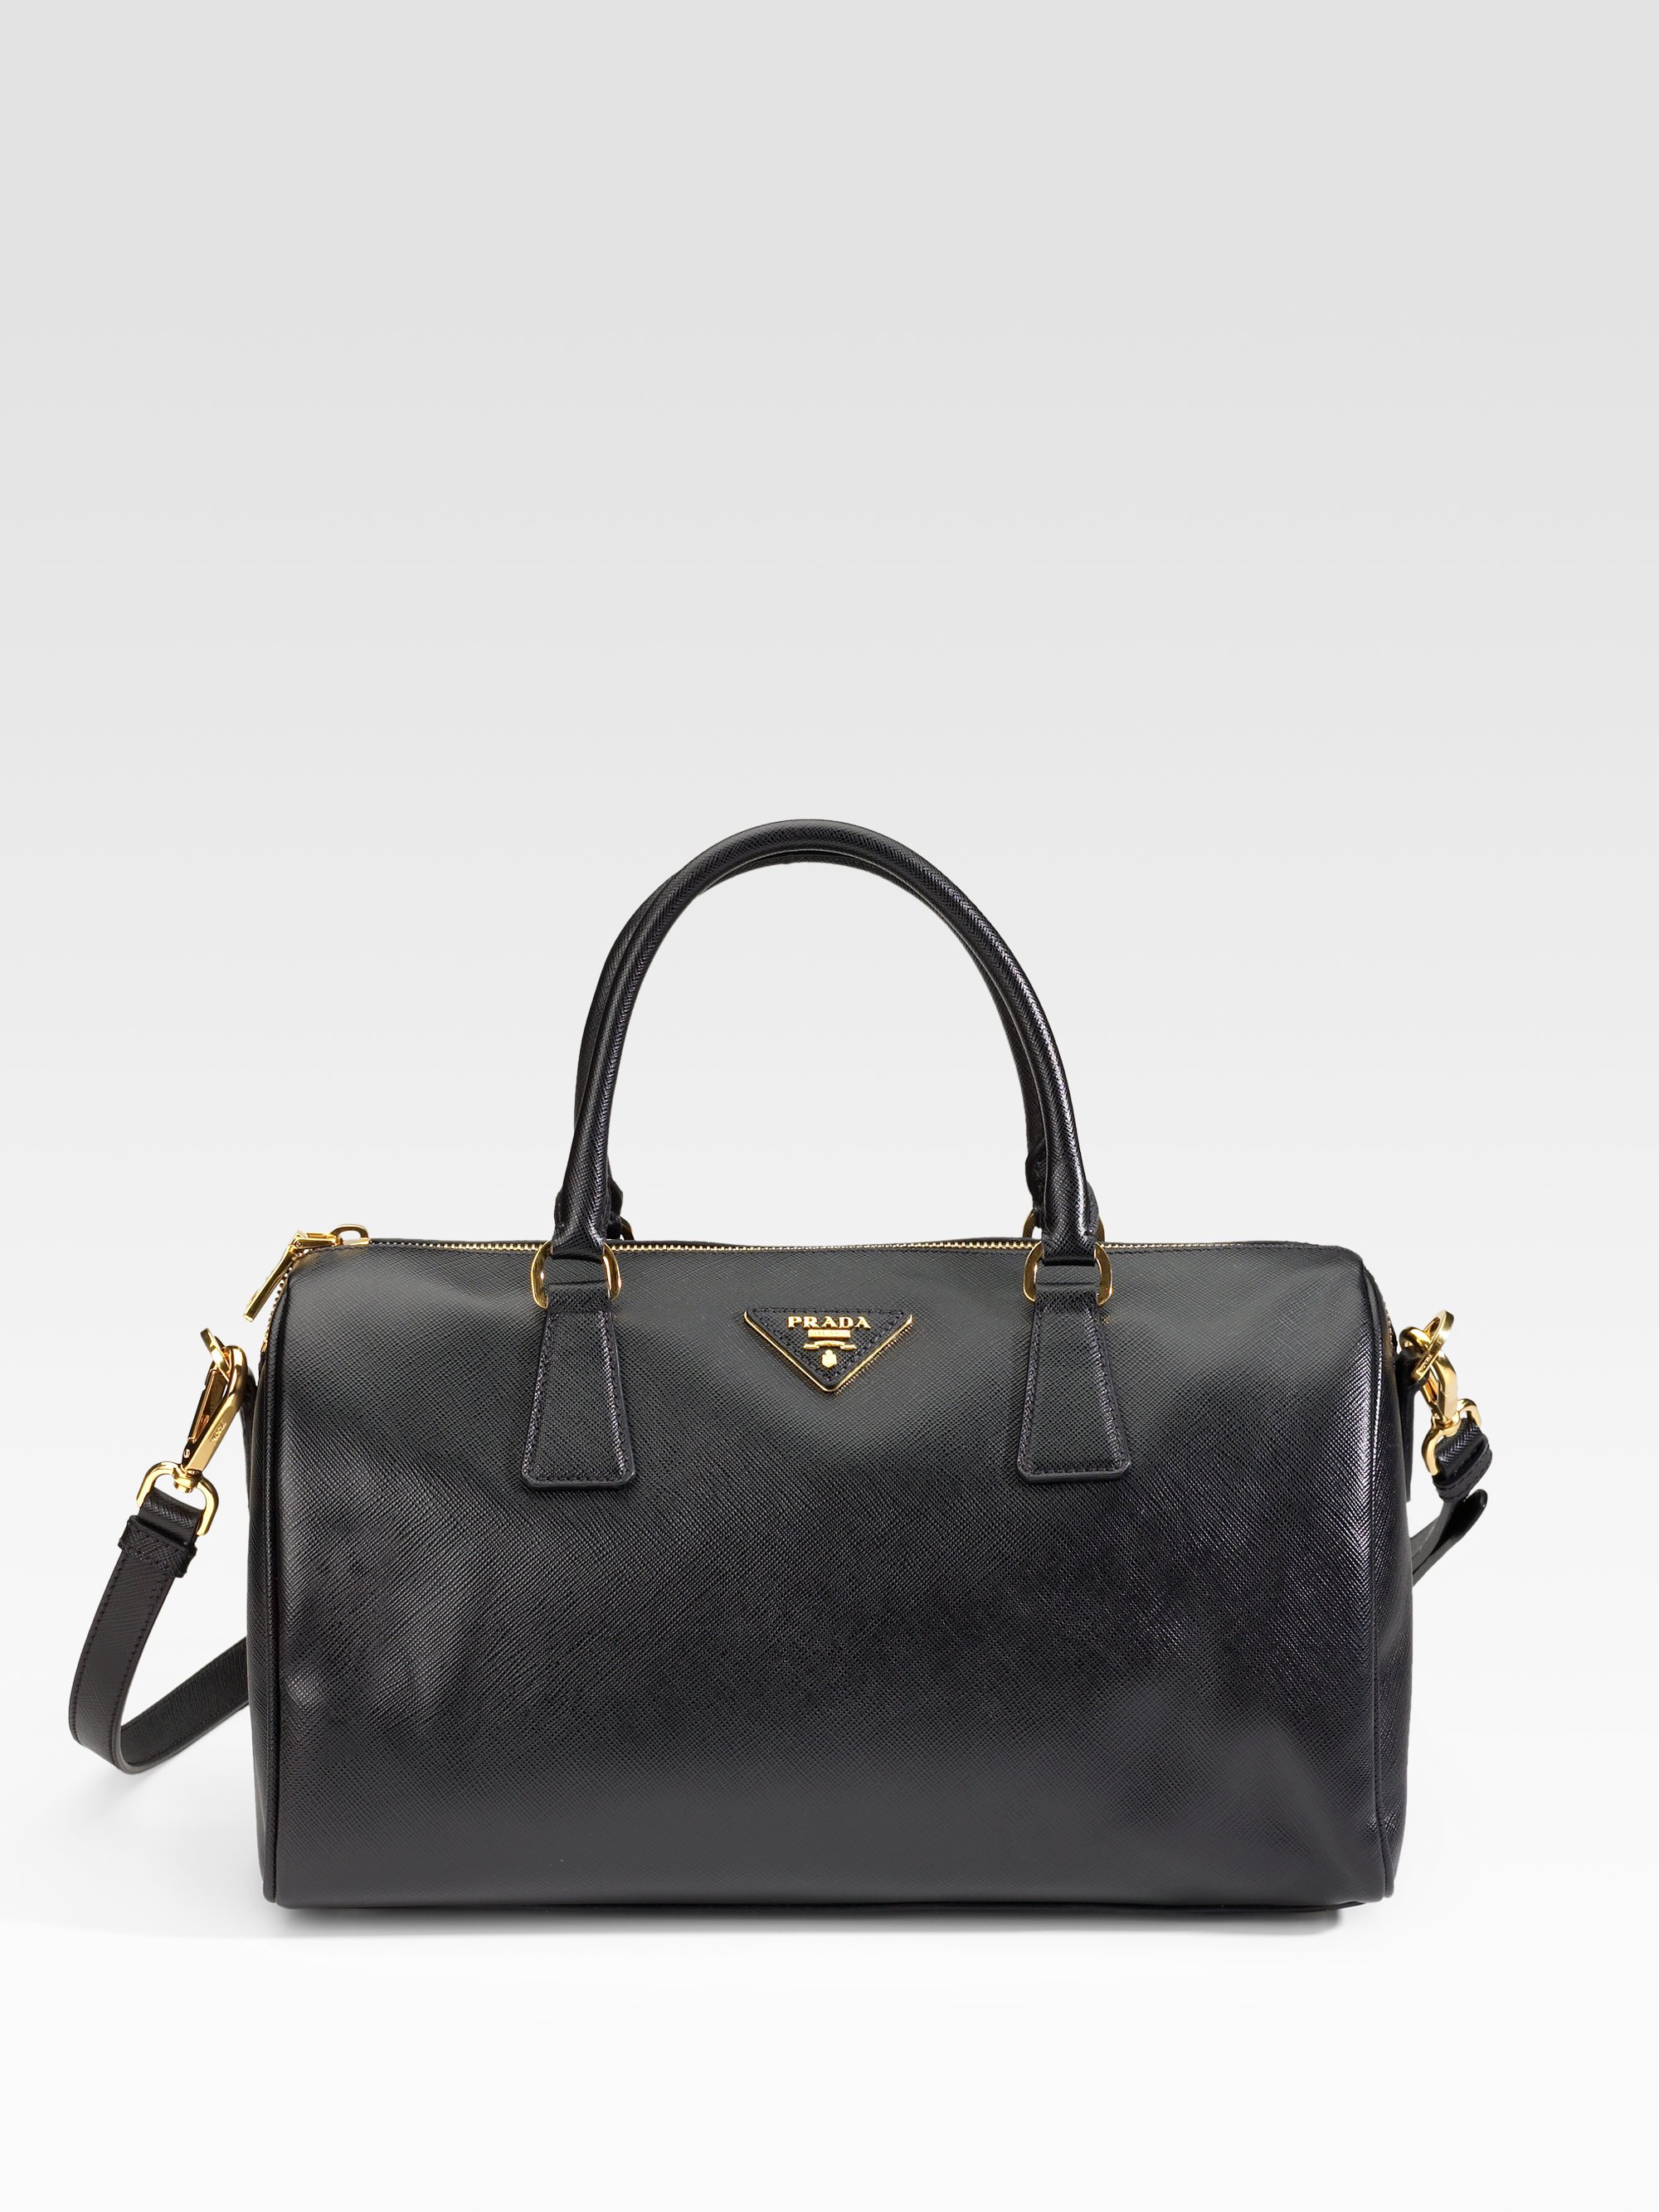 Prada Saffiano Lux Boston Bag in Black | Lyst